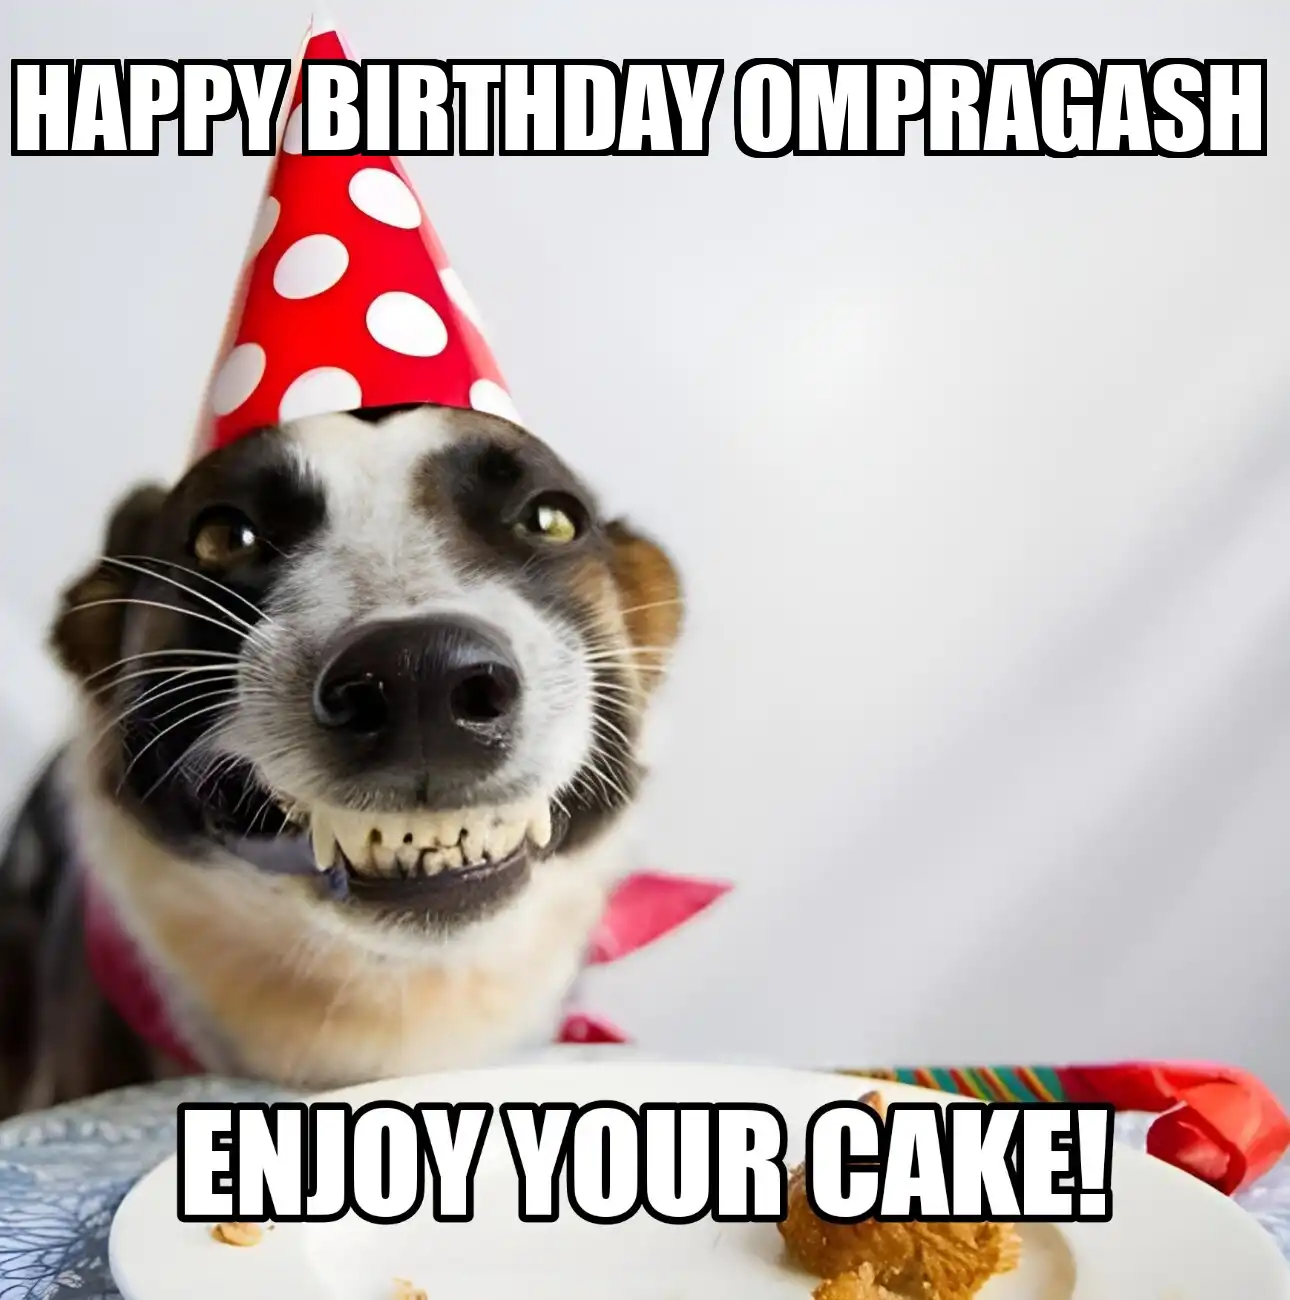 Happy Birthday Ompragash Enjoy Your Cake Dog Meme